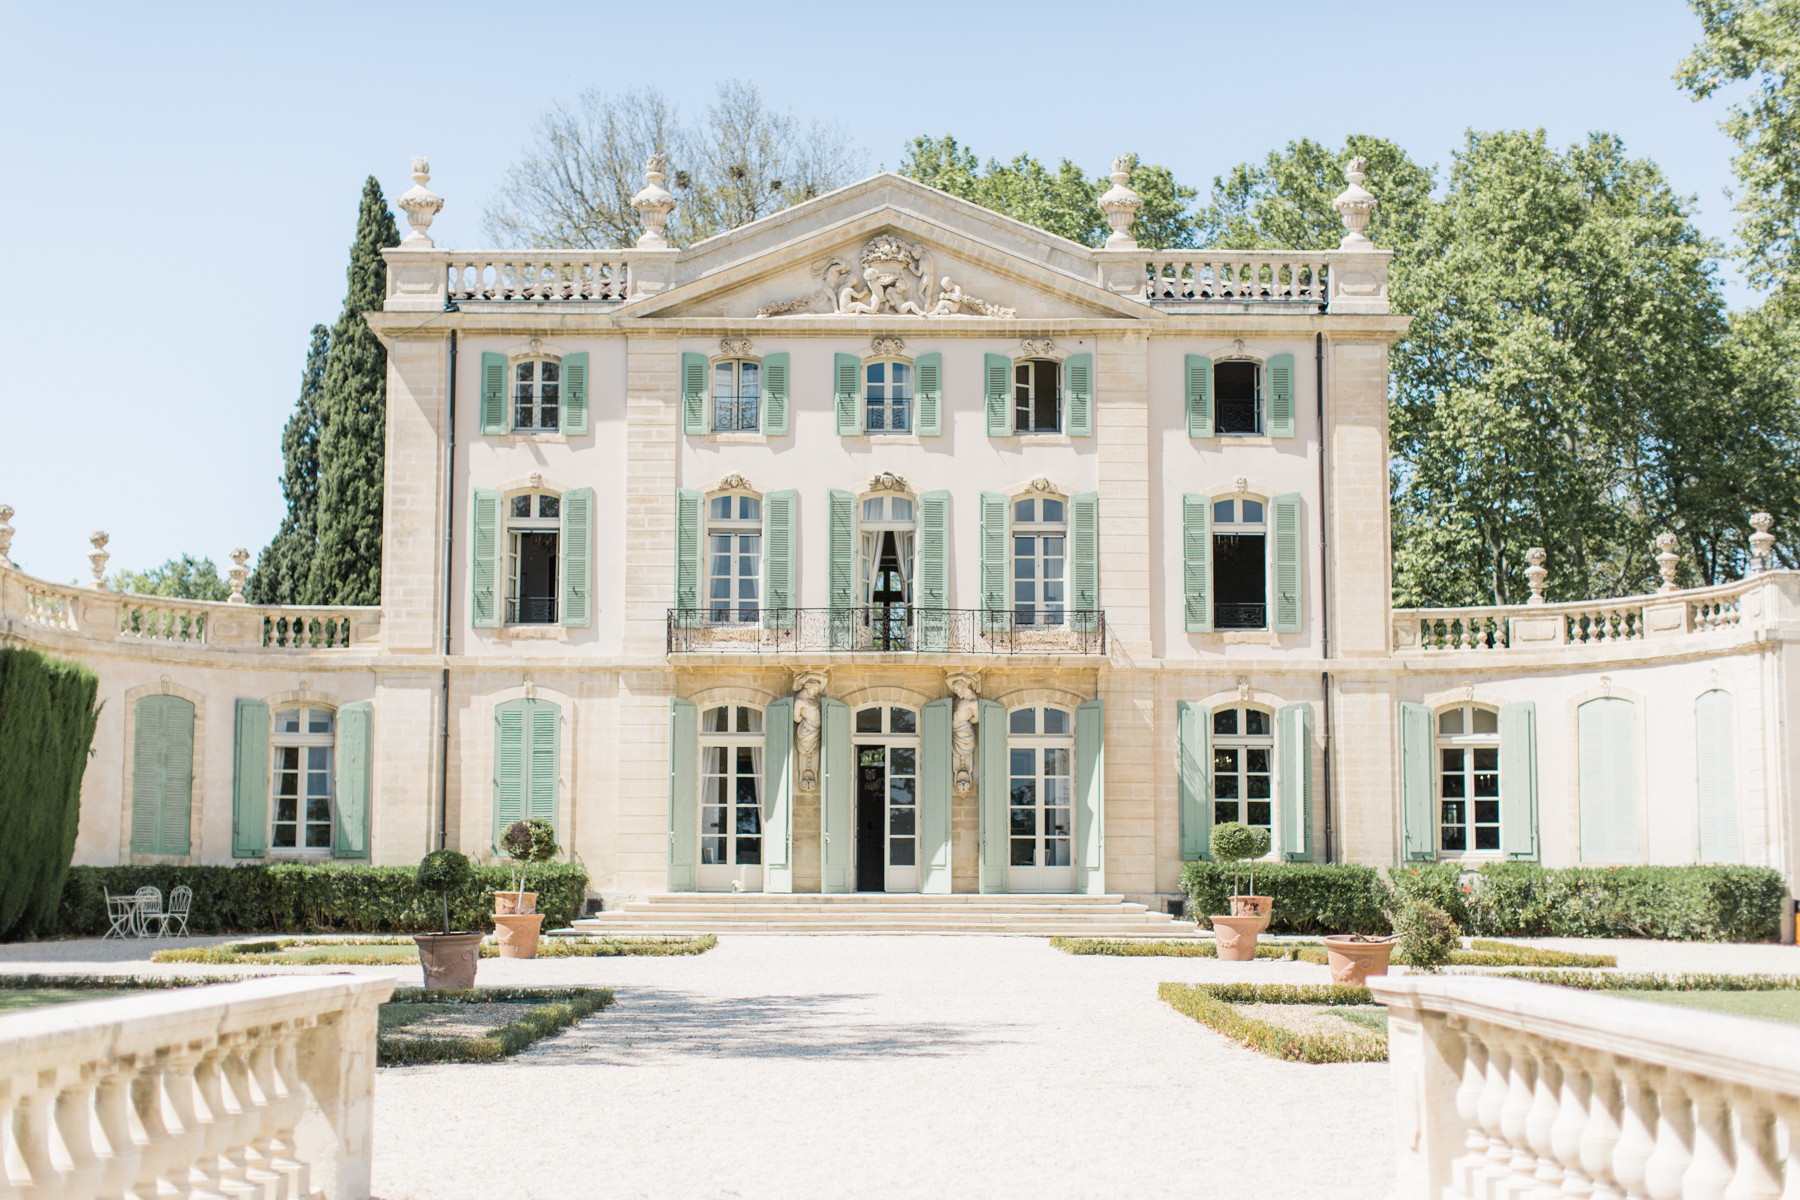 Mariage au Château de Tourreau - Megan + Oliver - Blog Mariage Madame C